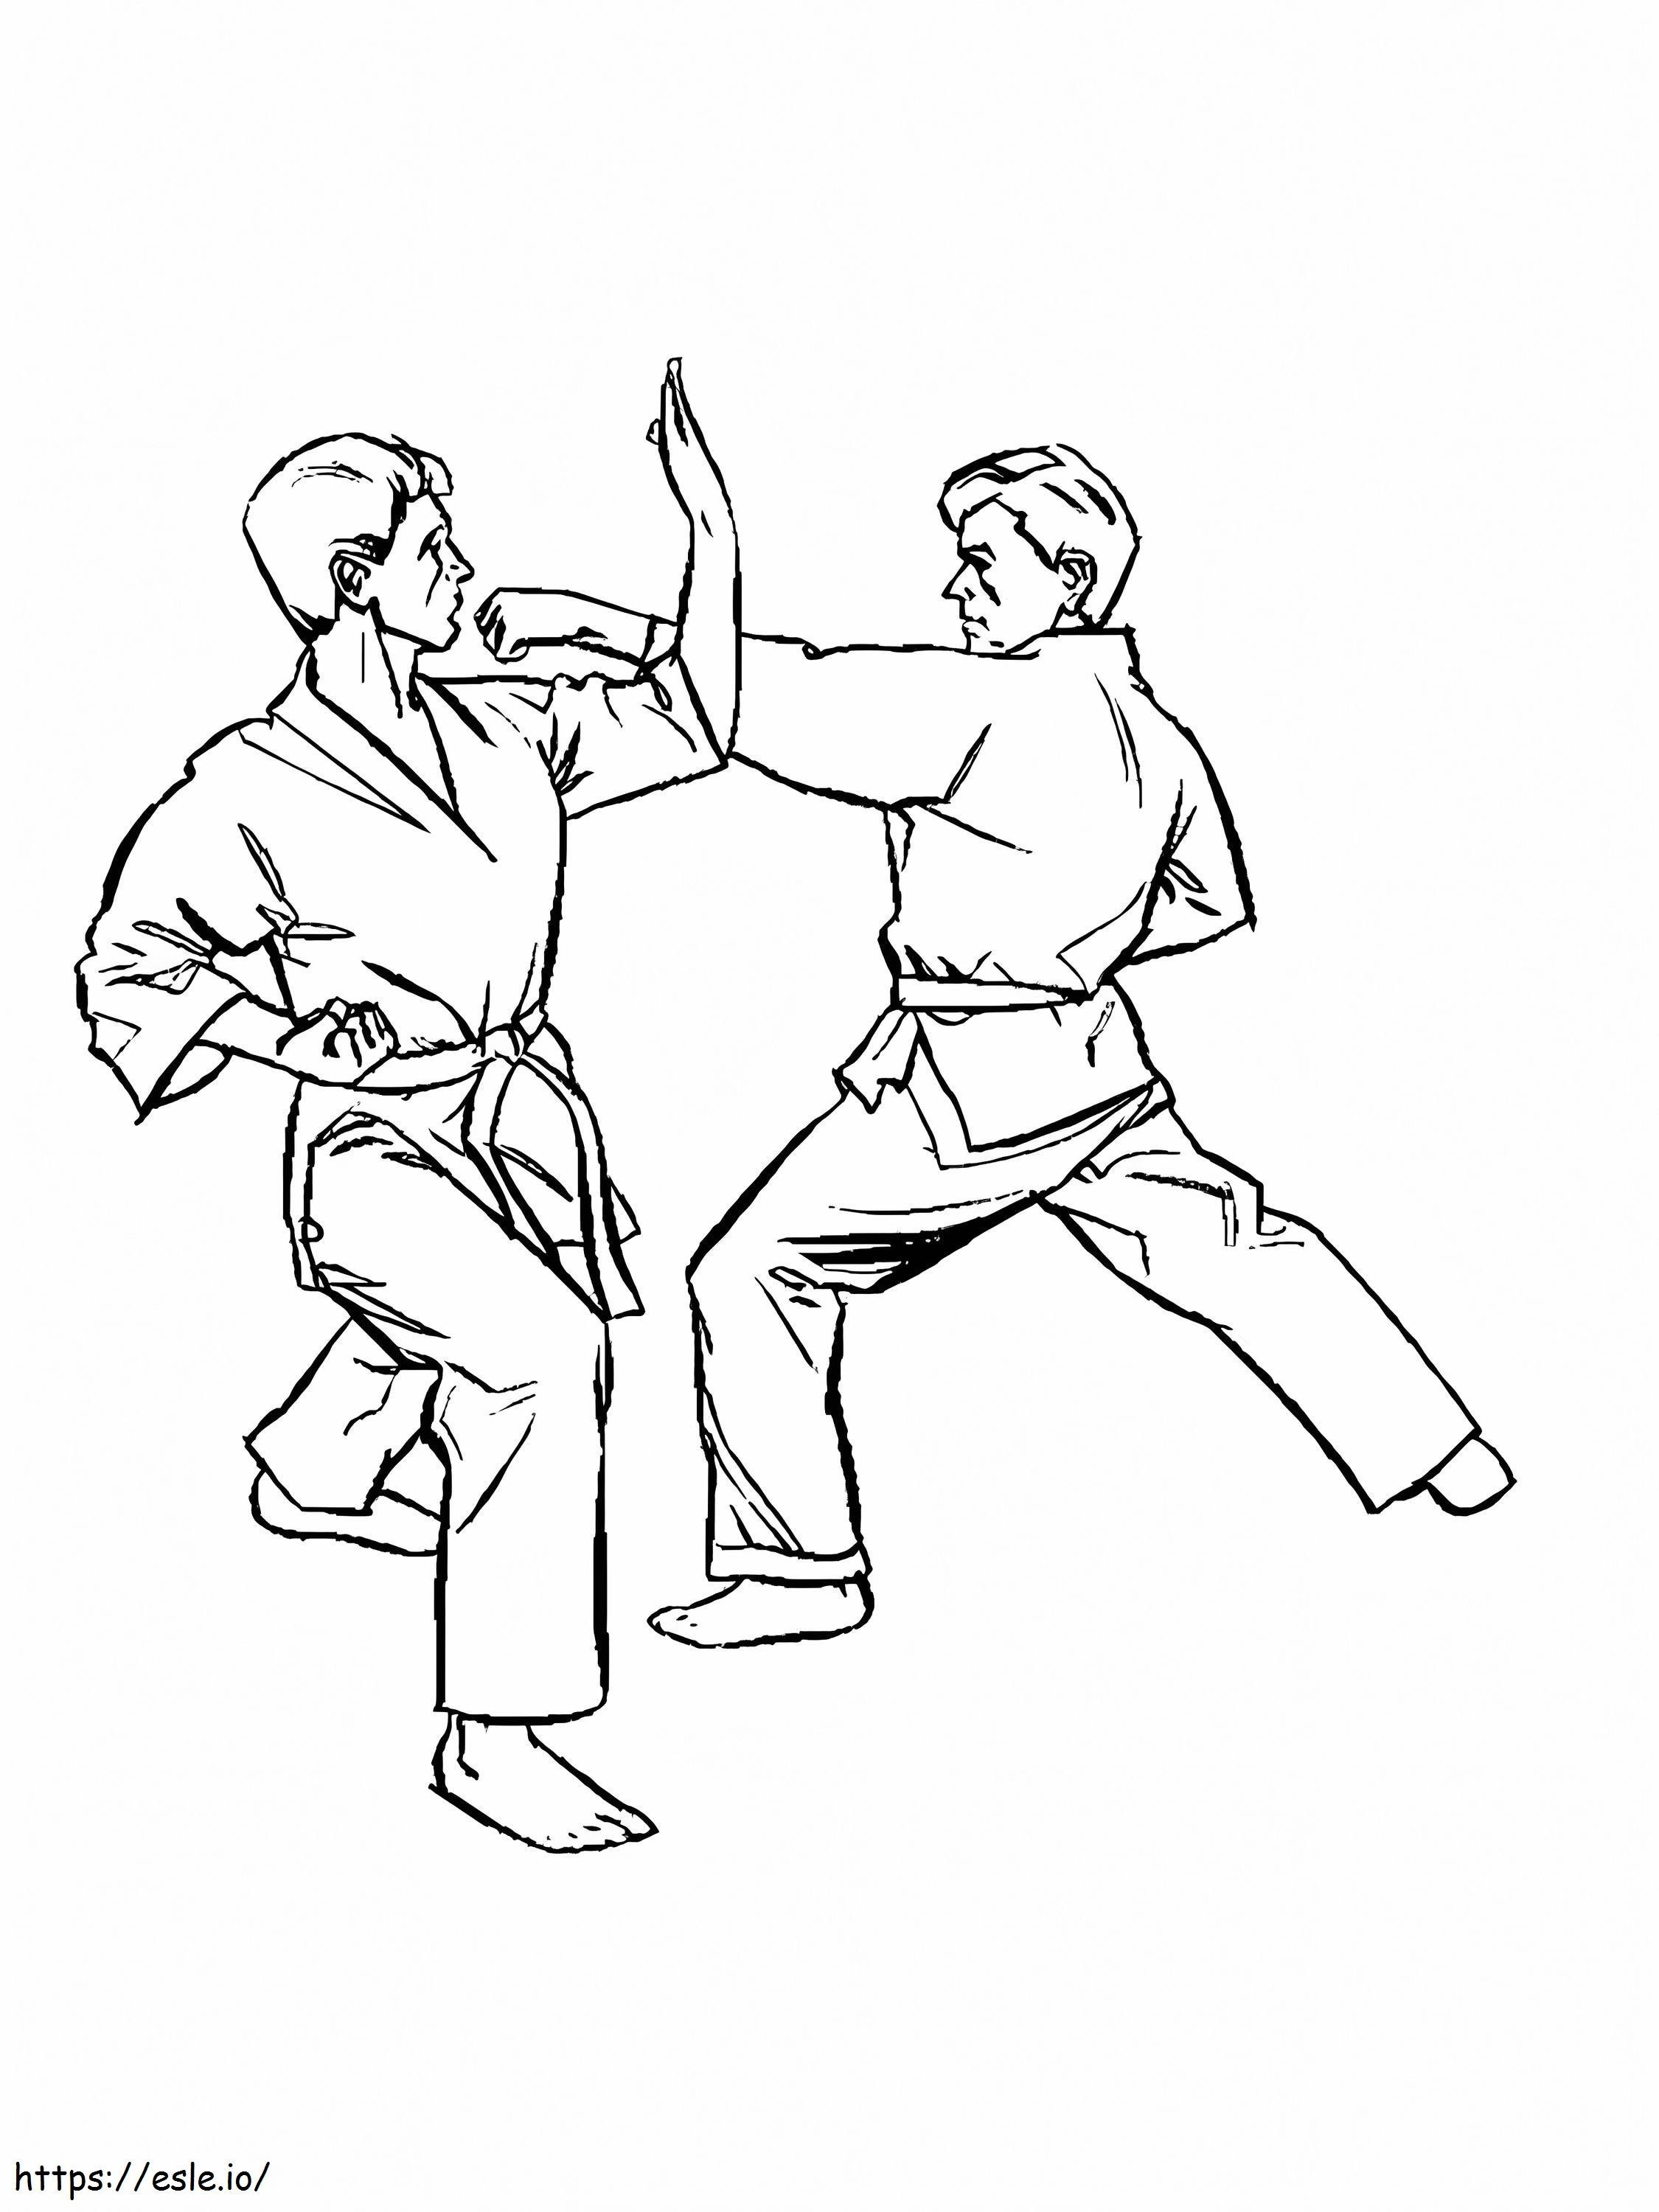 Karate ausdrucken ausmalbilder